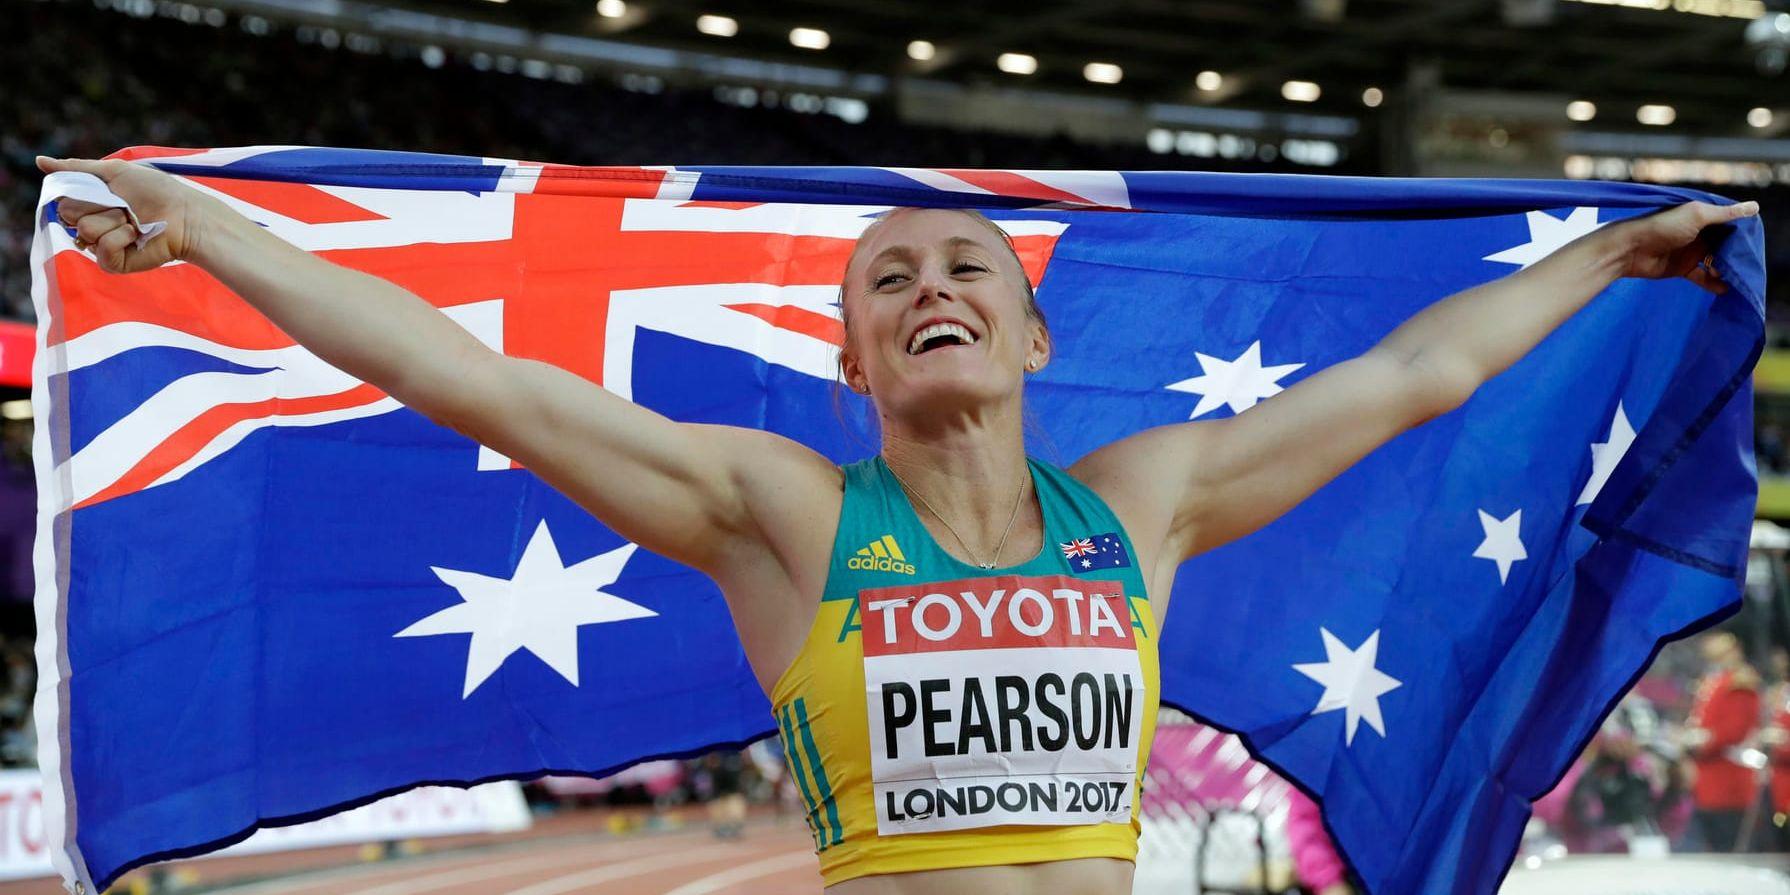 Sally Pearson vann 100 meter häck på friidrotts-VM i London i fjol. Arkivbild.